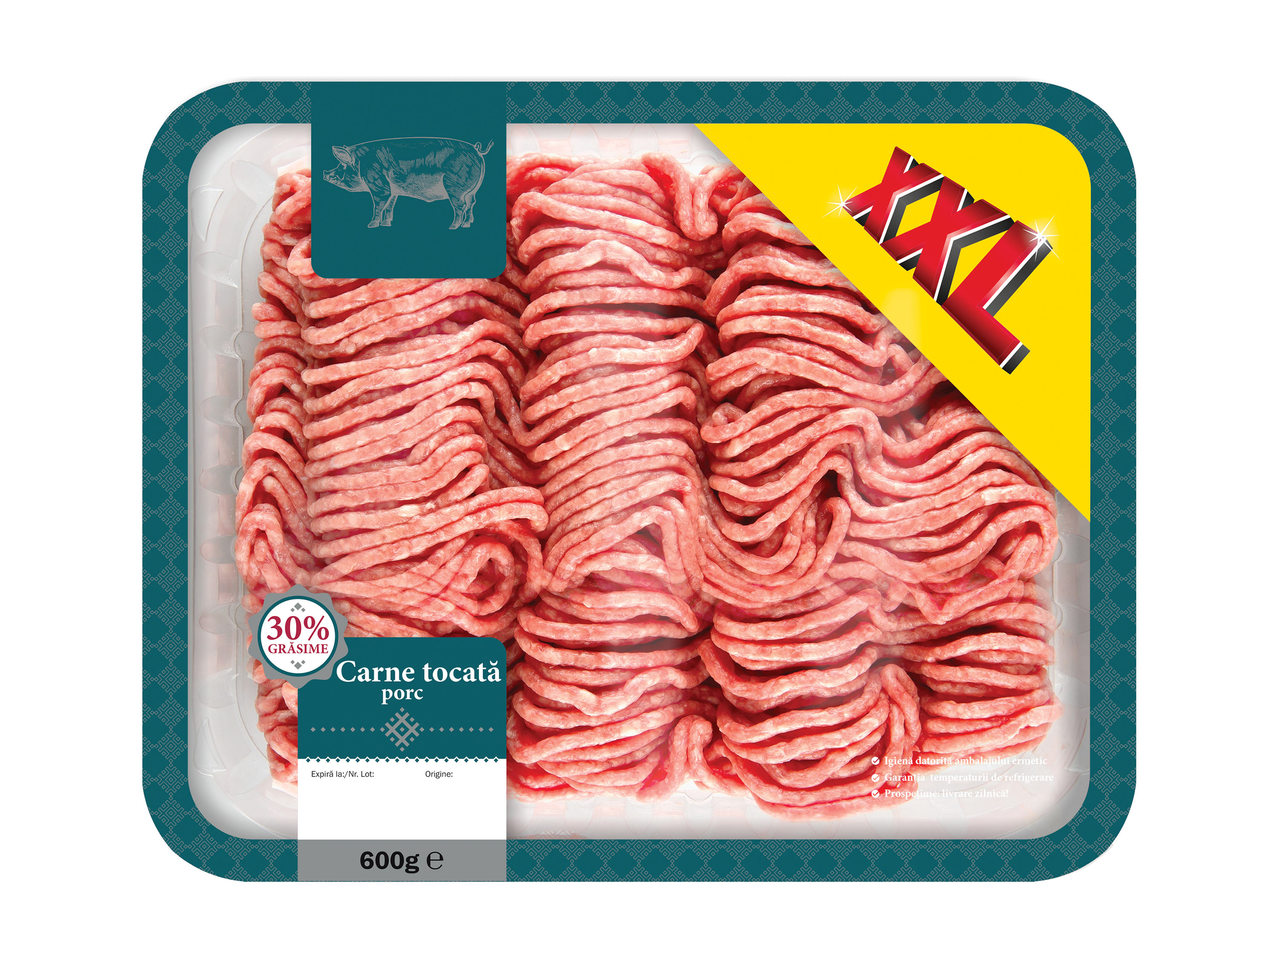 Impossible Condense Prosecute Carne tocată de porc - Lidl — România - Promoții arhiva